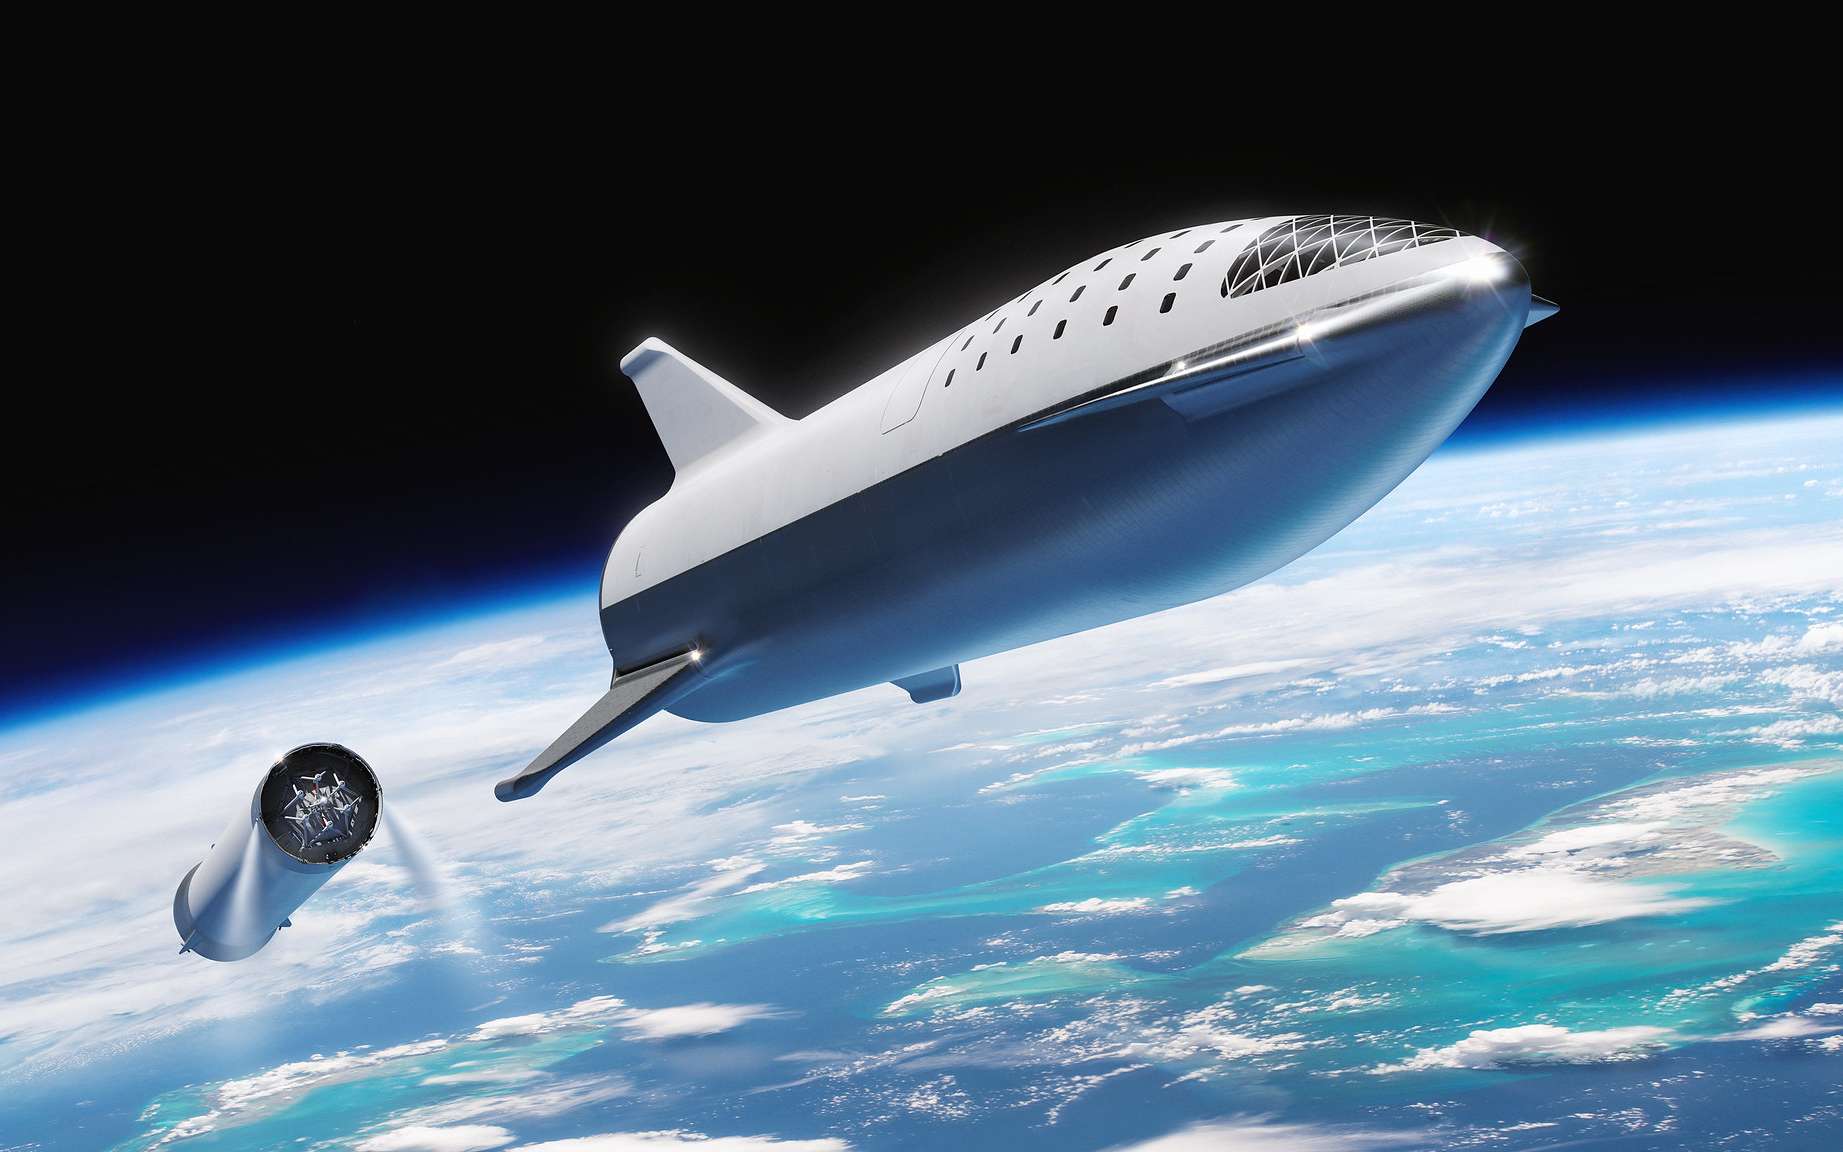 SpaceX |🚀 Elon Musk : Comment regarder la mise à jour de Starship en vidéo live ce soir !